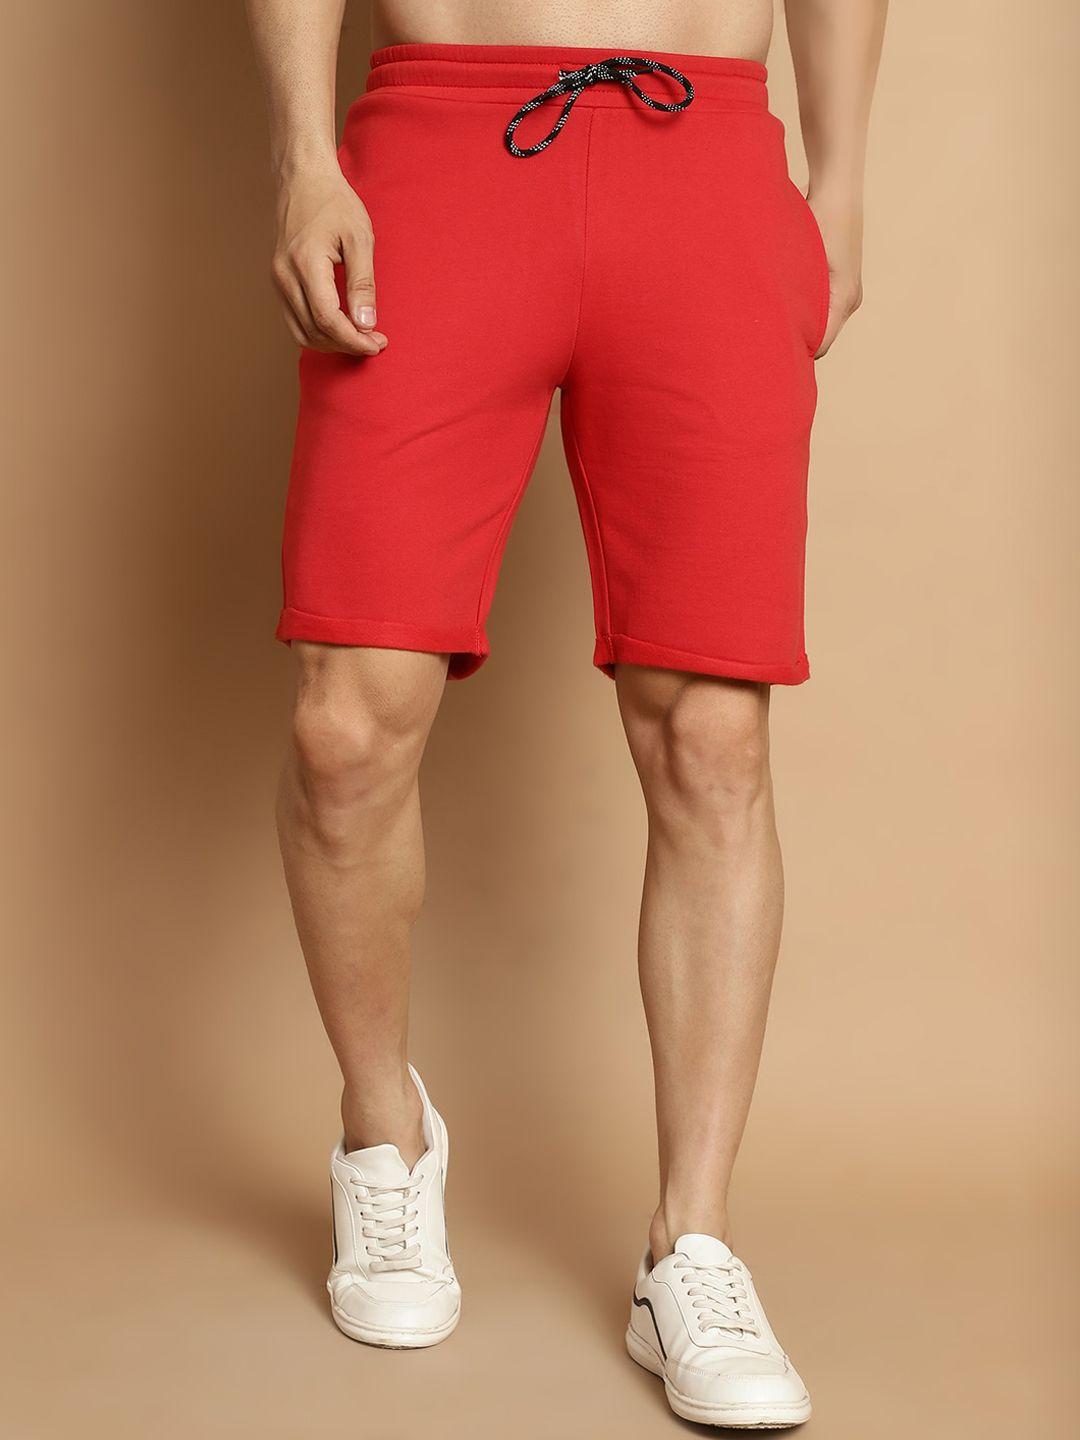 door74 men red shorts